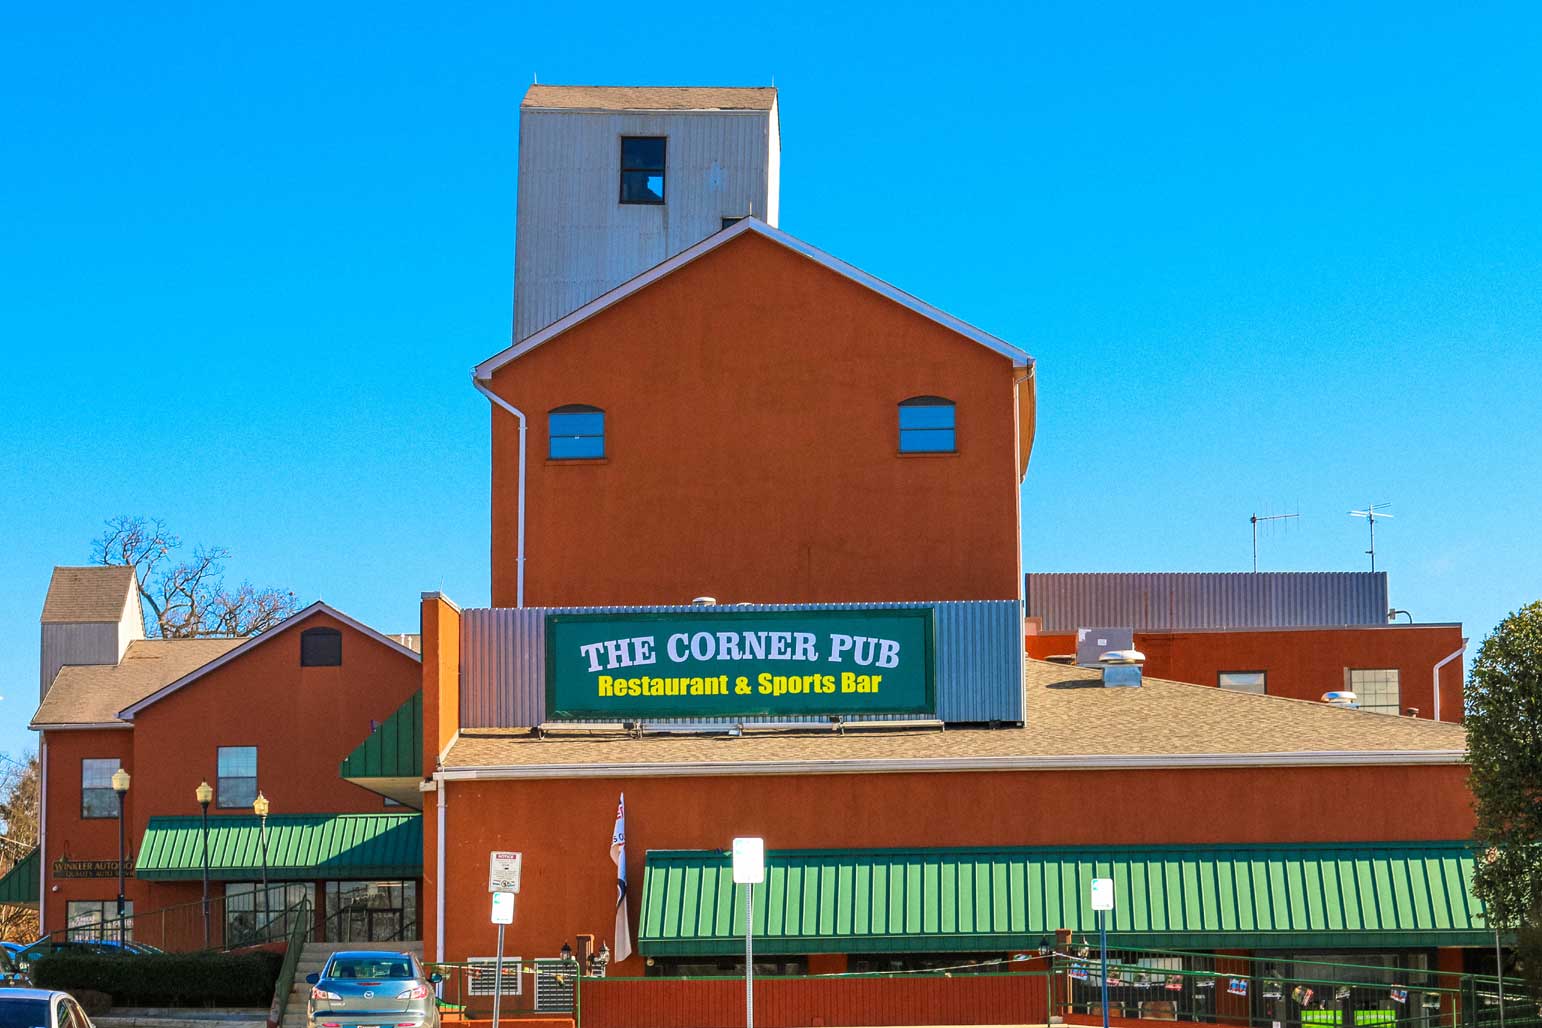 The Corner Pub in Gaithersburg, MD